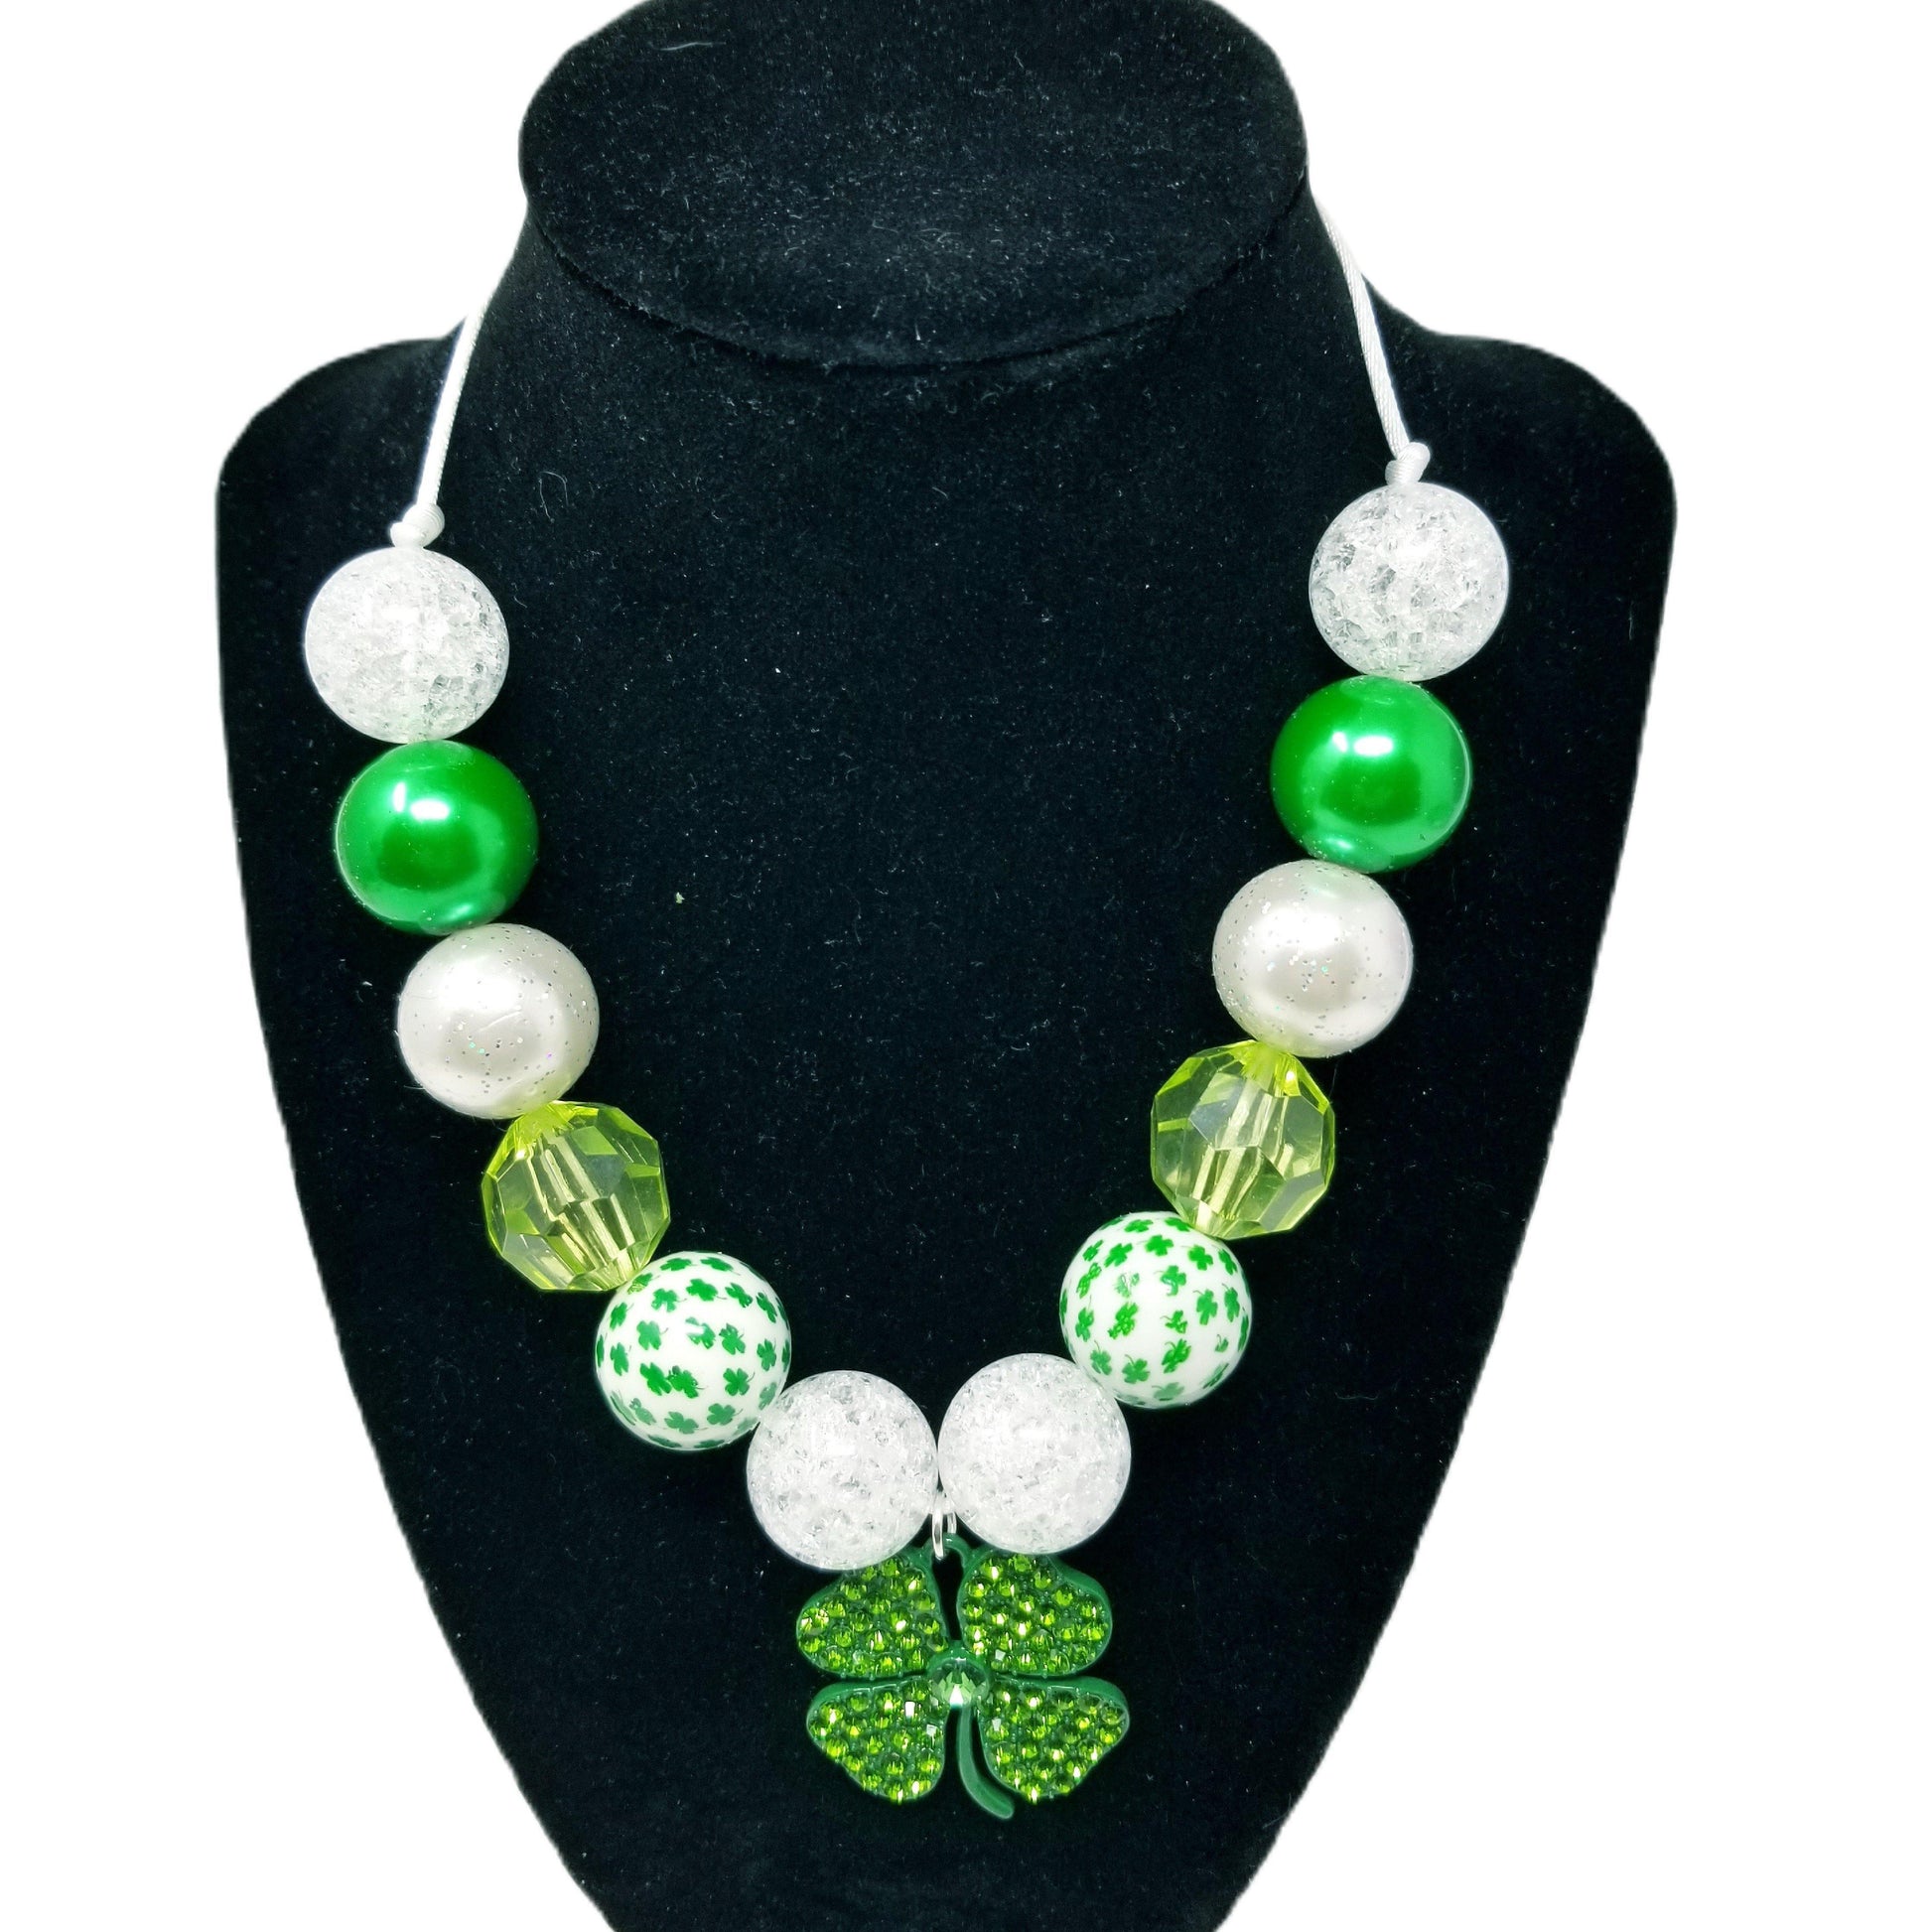 St. Patrick's Bubblegum Necklace with Clover Pendant